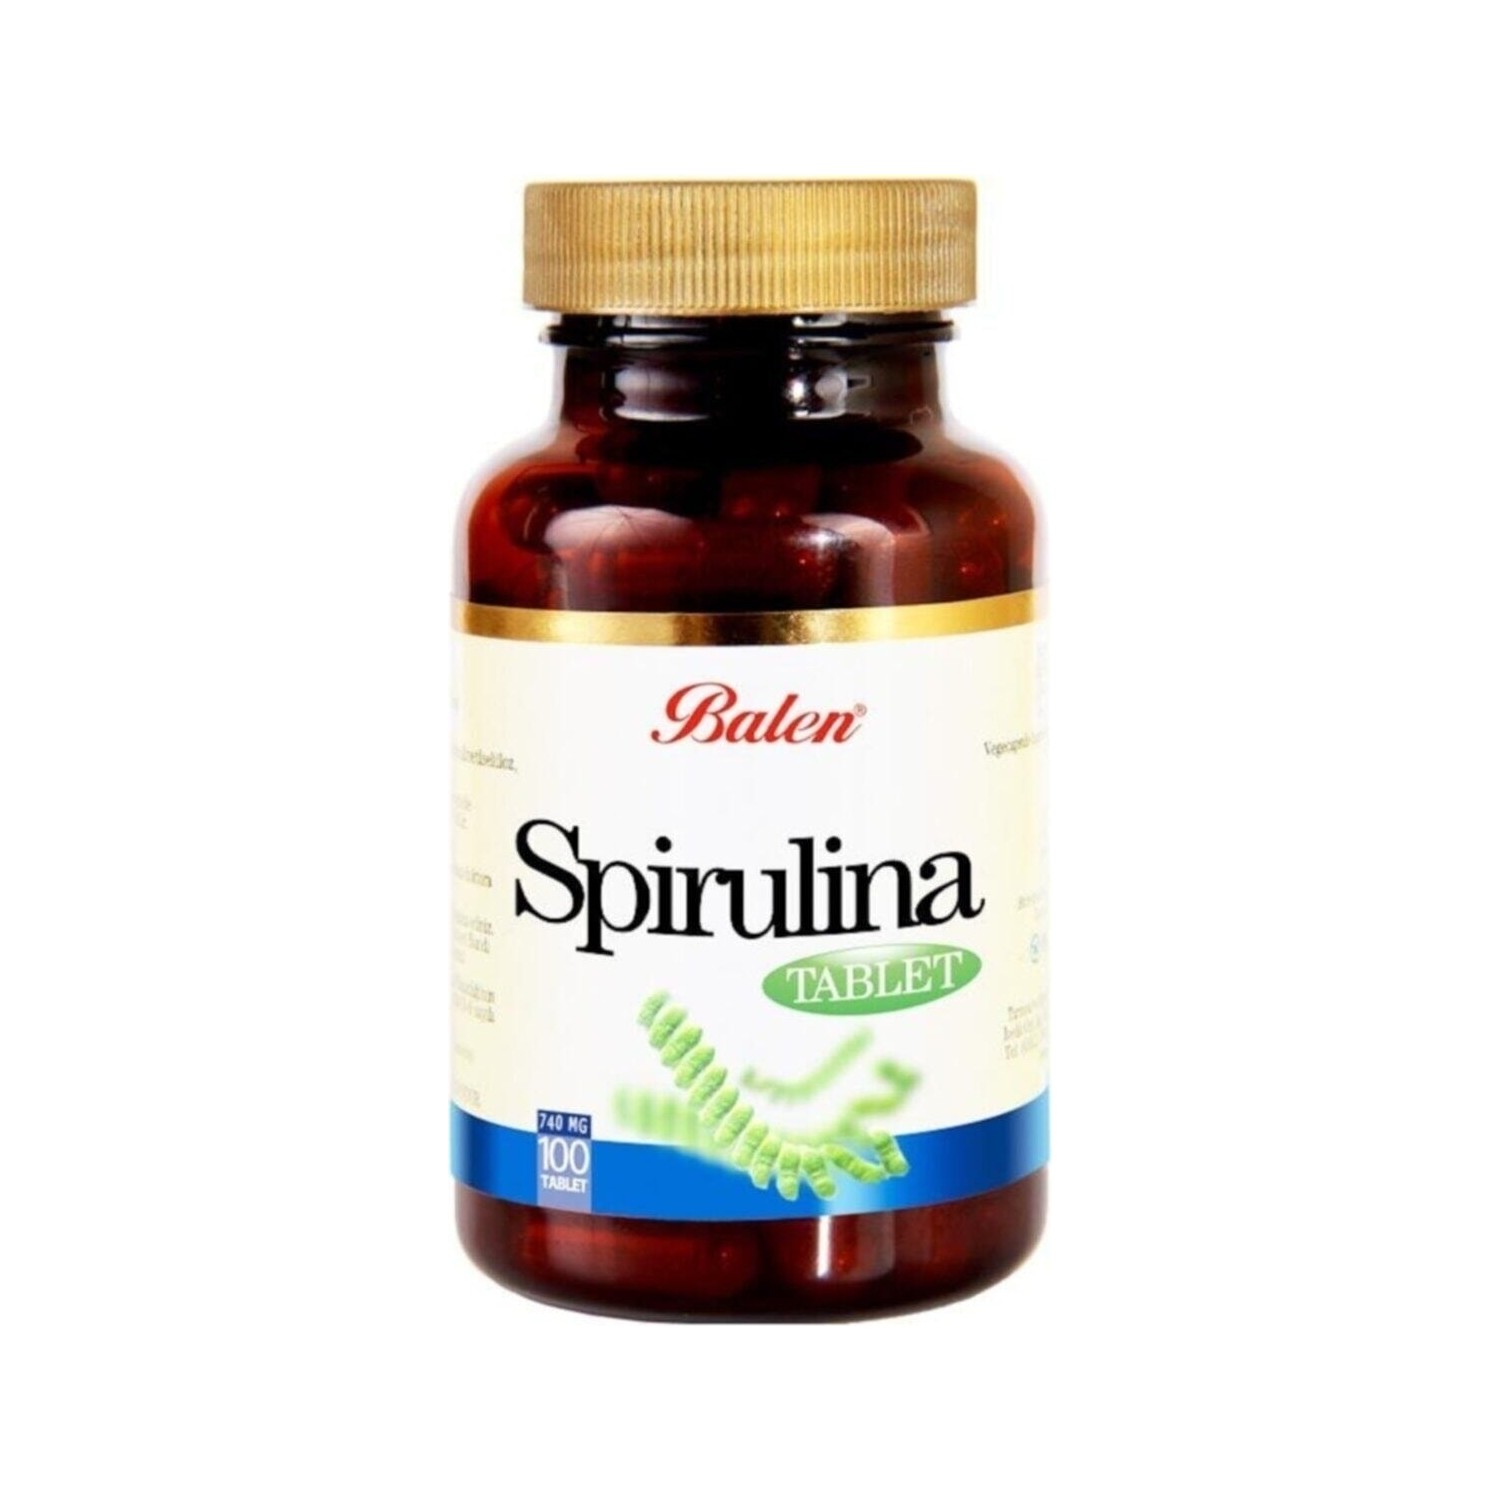 Пищевая добавка Balen Spirulina 740 мг, 100 таблеток пищевая добавка balen v5 1015 мг 60 таблеток